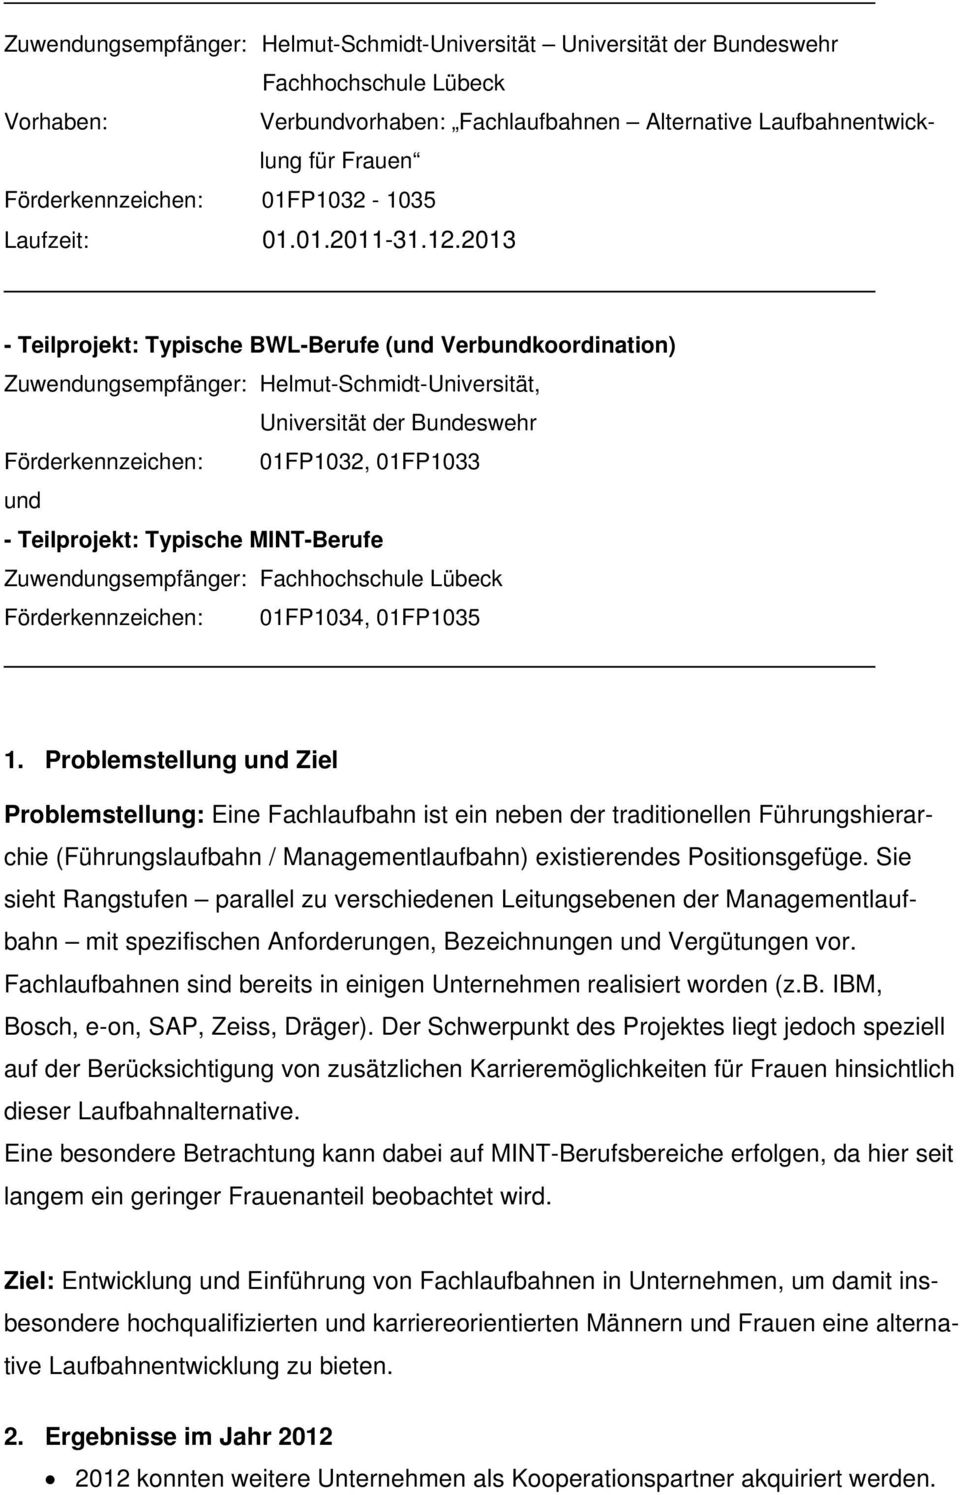 2013 - Teilprojekt: Typische BWL-Berufe (und Verbundkoordination) Zuwendungsempfänger: Helmut-Schmidt-Universität, Universität der Bundeswehr Förderkennzeichen: 01FP1032, 01FP1033 und - Teilprojekt: